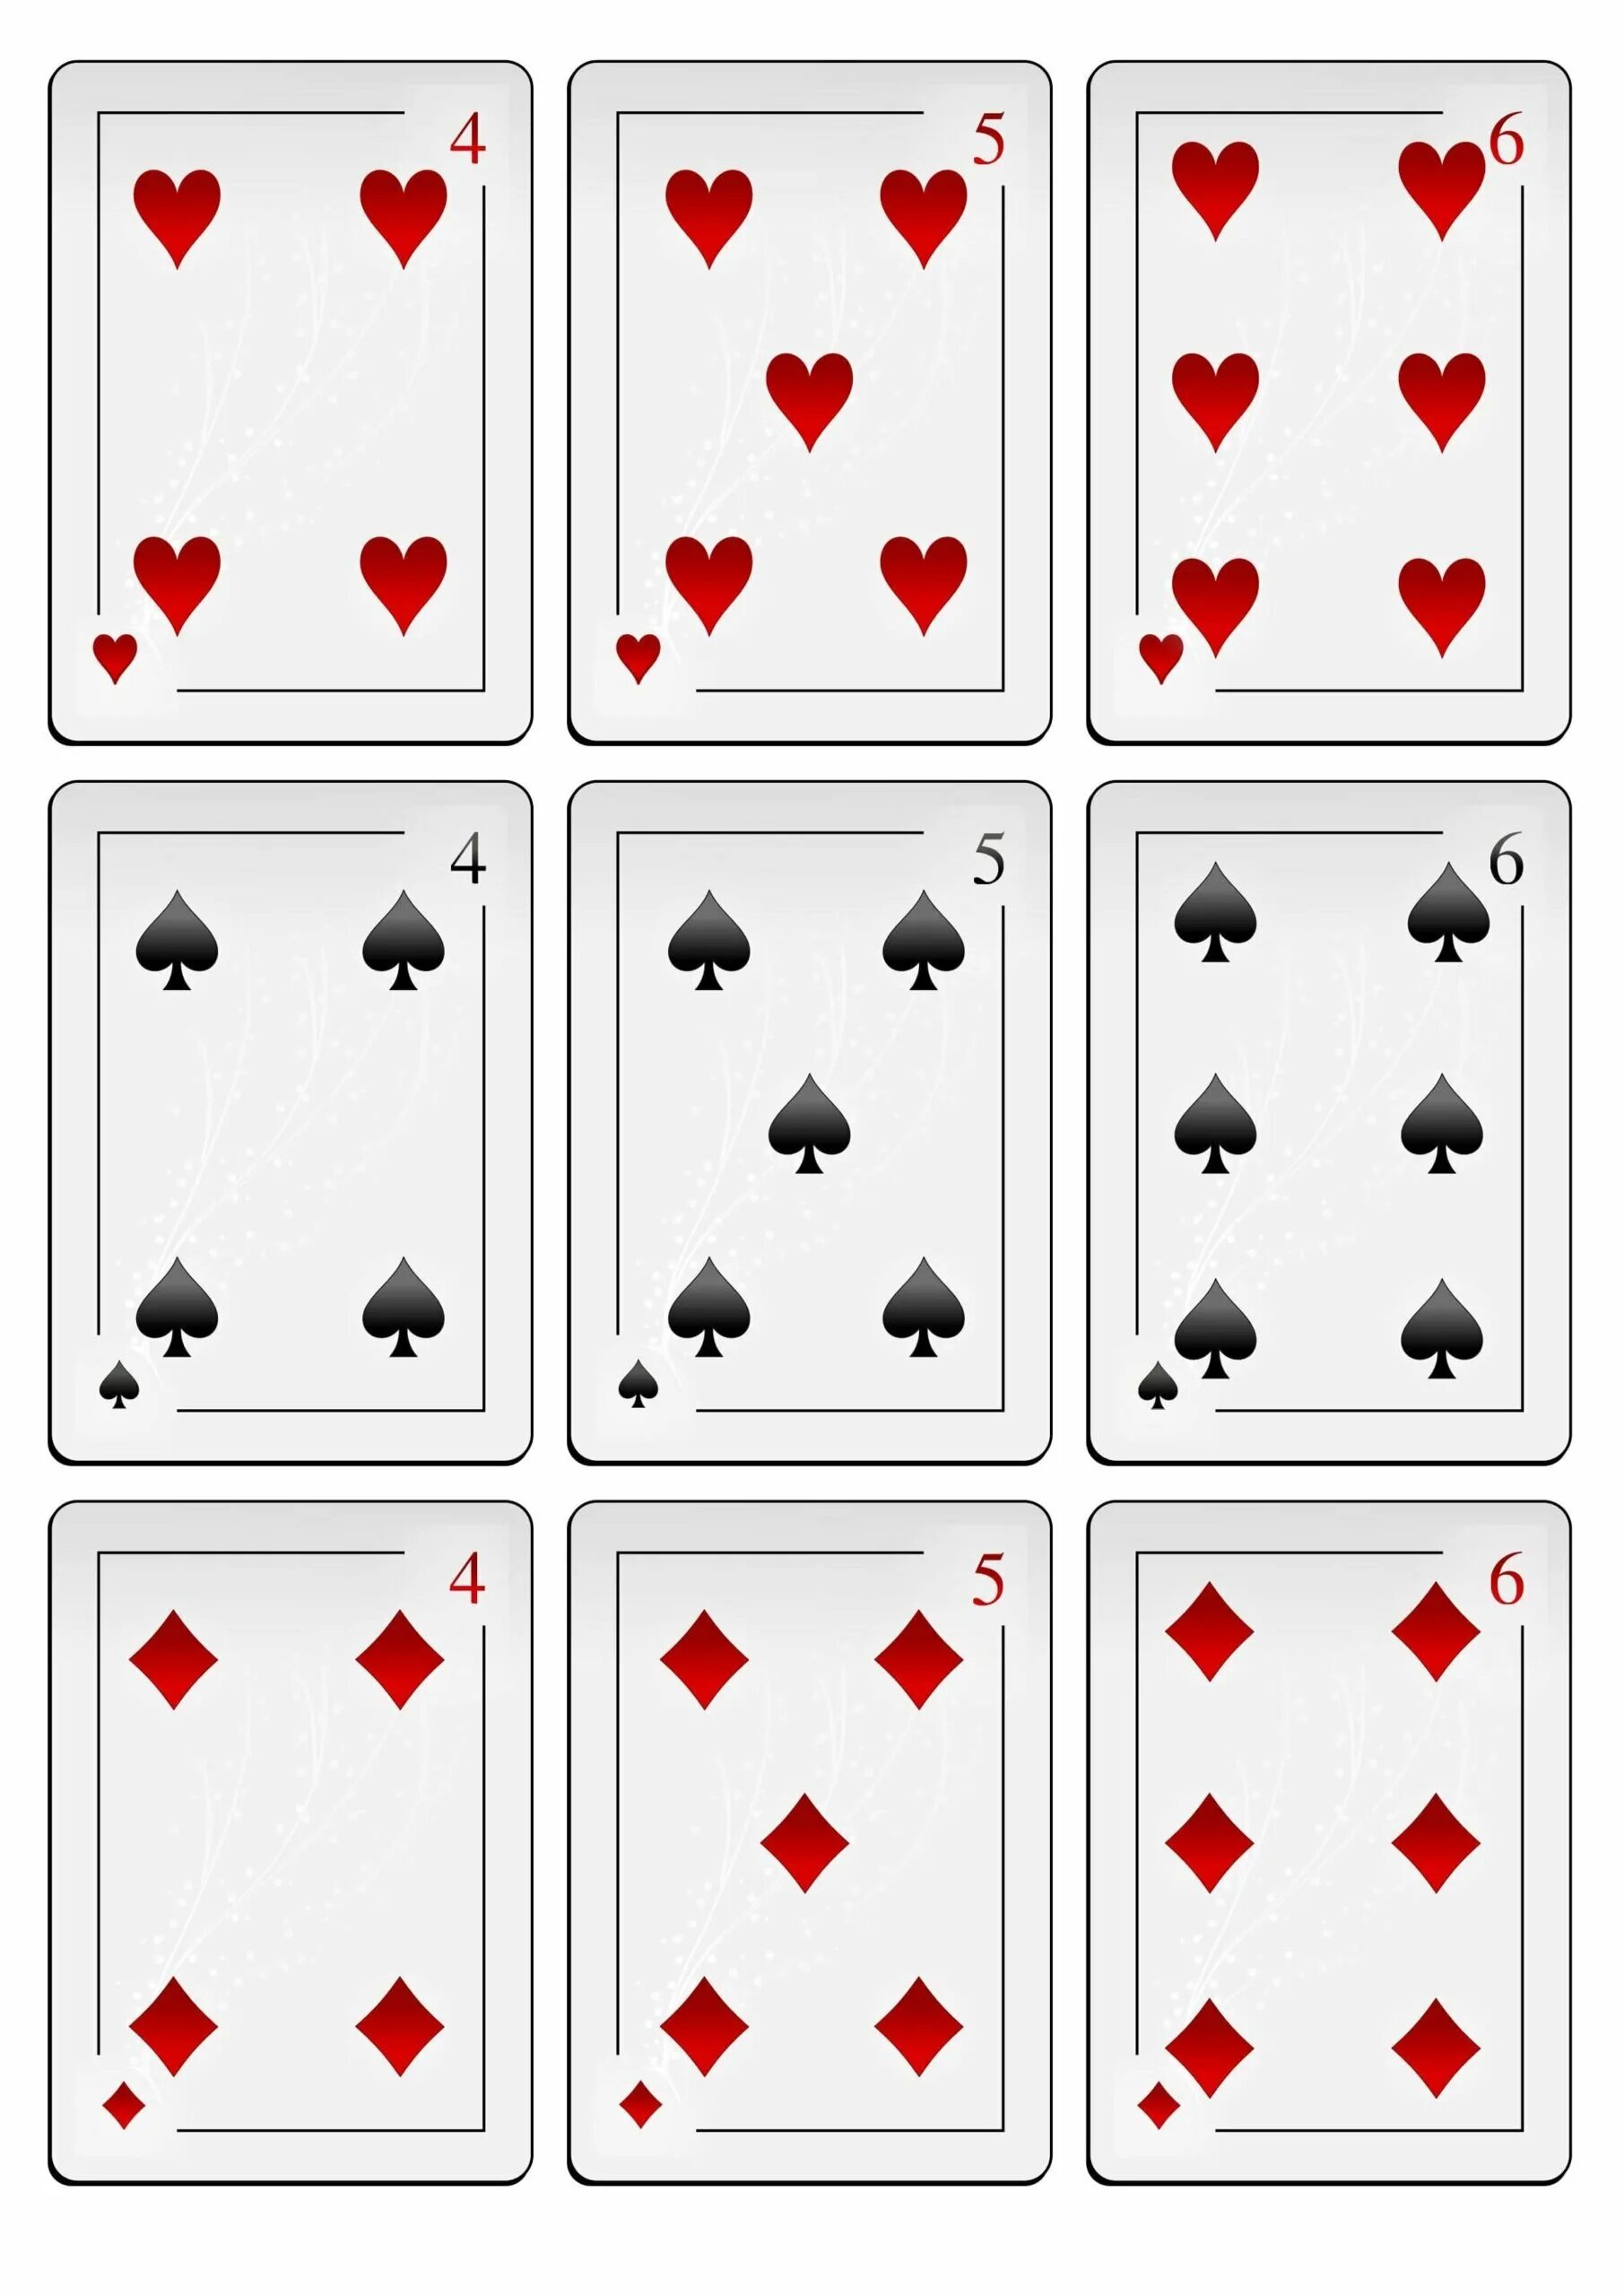 Все карты дурака. Колода игральных карт. Колода карт 36. Игральная колода 36 карт. Карты обычные игральные.